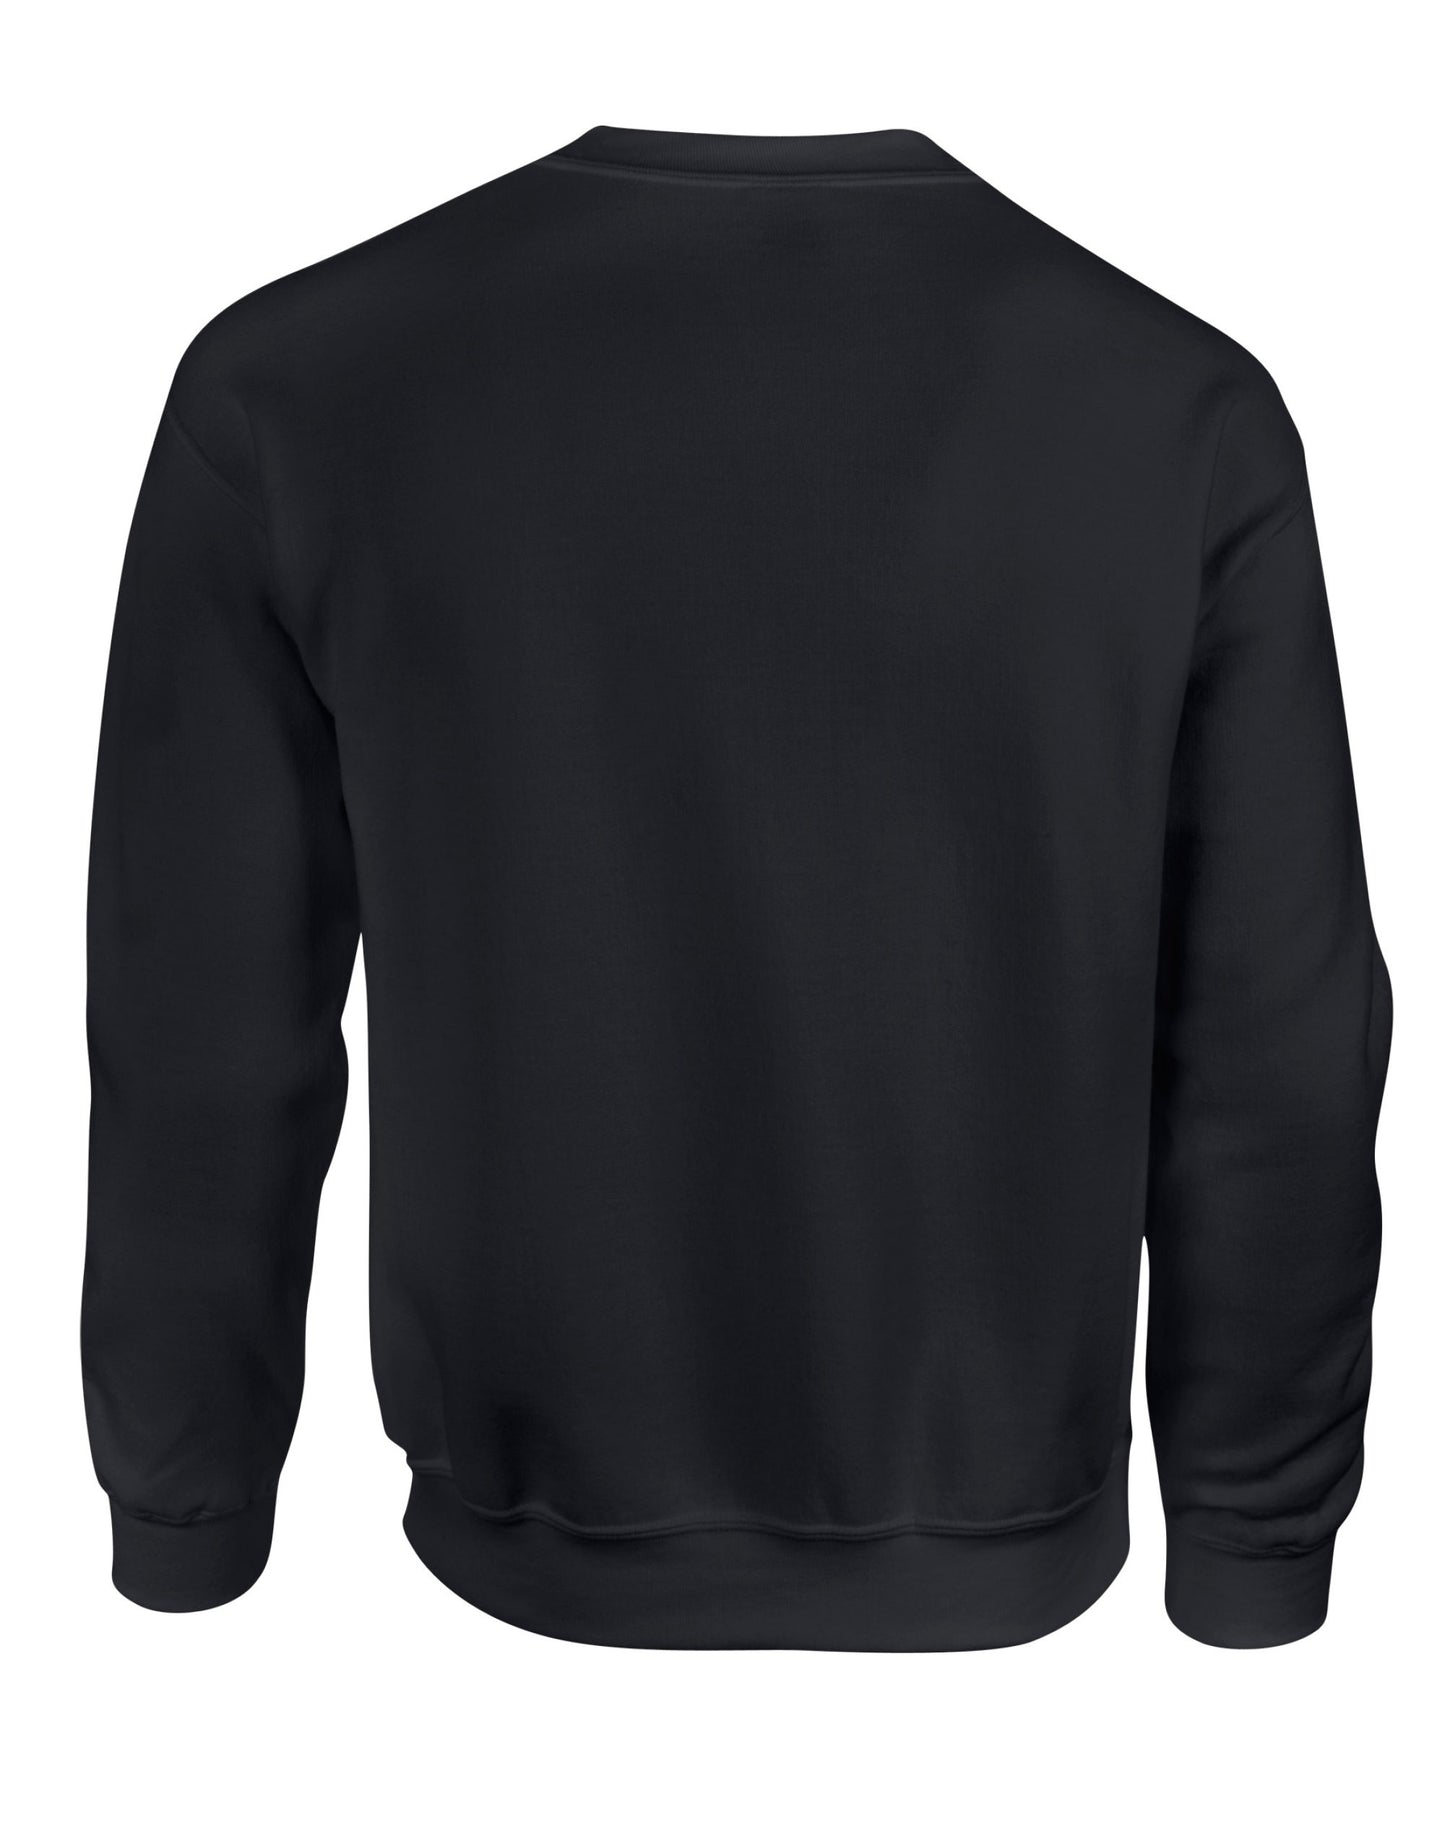 Gildan Heavy Blend Adult Crew Sweatshirt